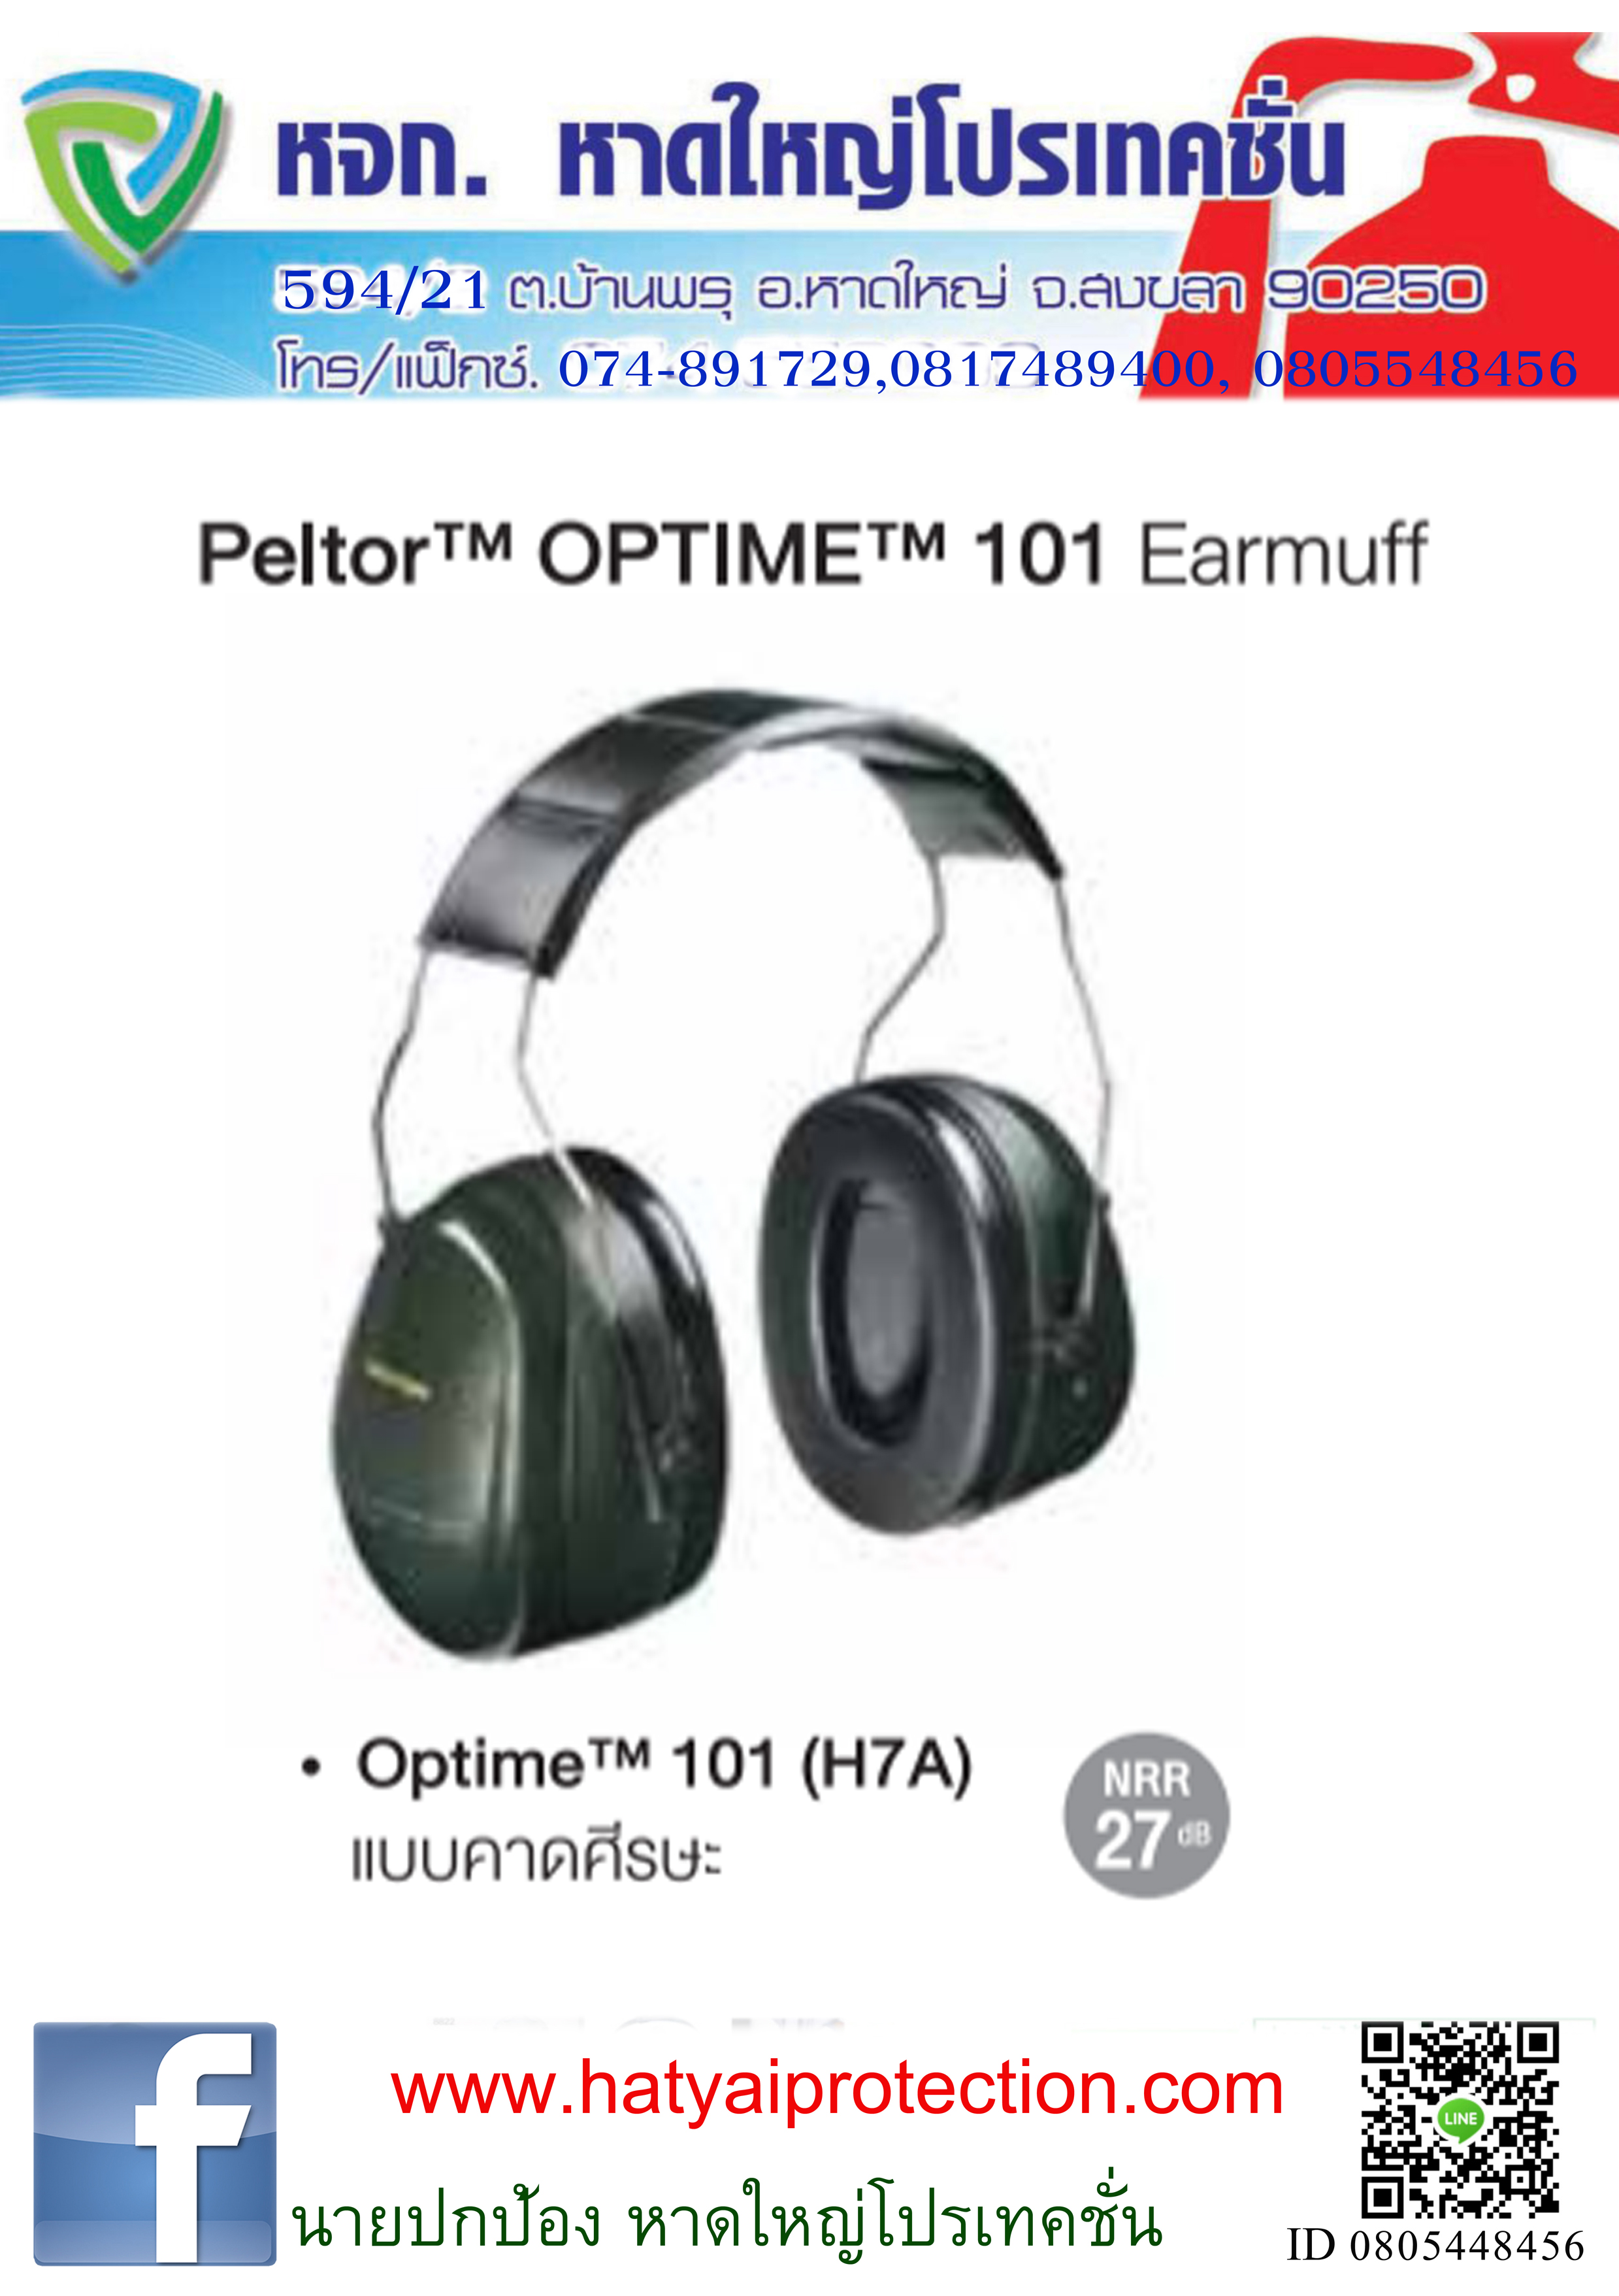 ครอบหู Earmuff OPTIMETM101 ( H7A ) แบบคาดศรีษะ